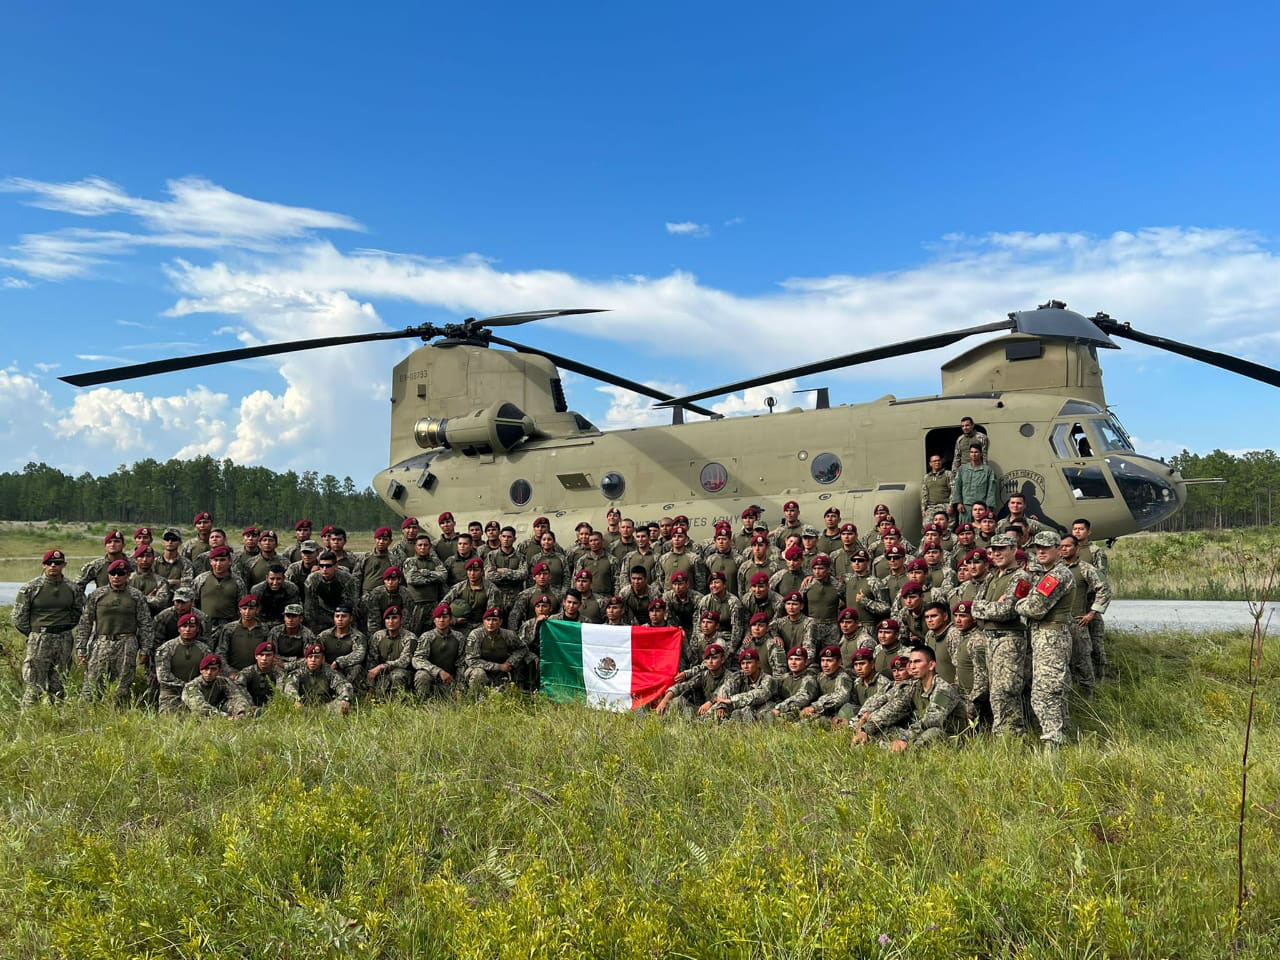 Nuevo uniforme campaña del Ejército Mexicano TW